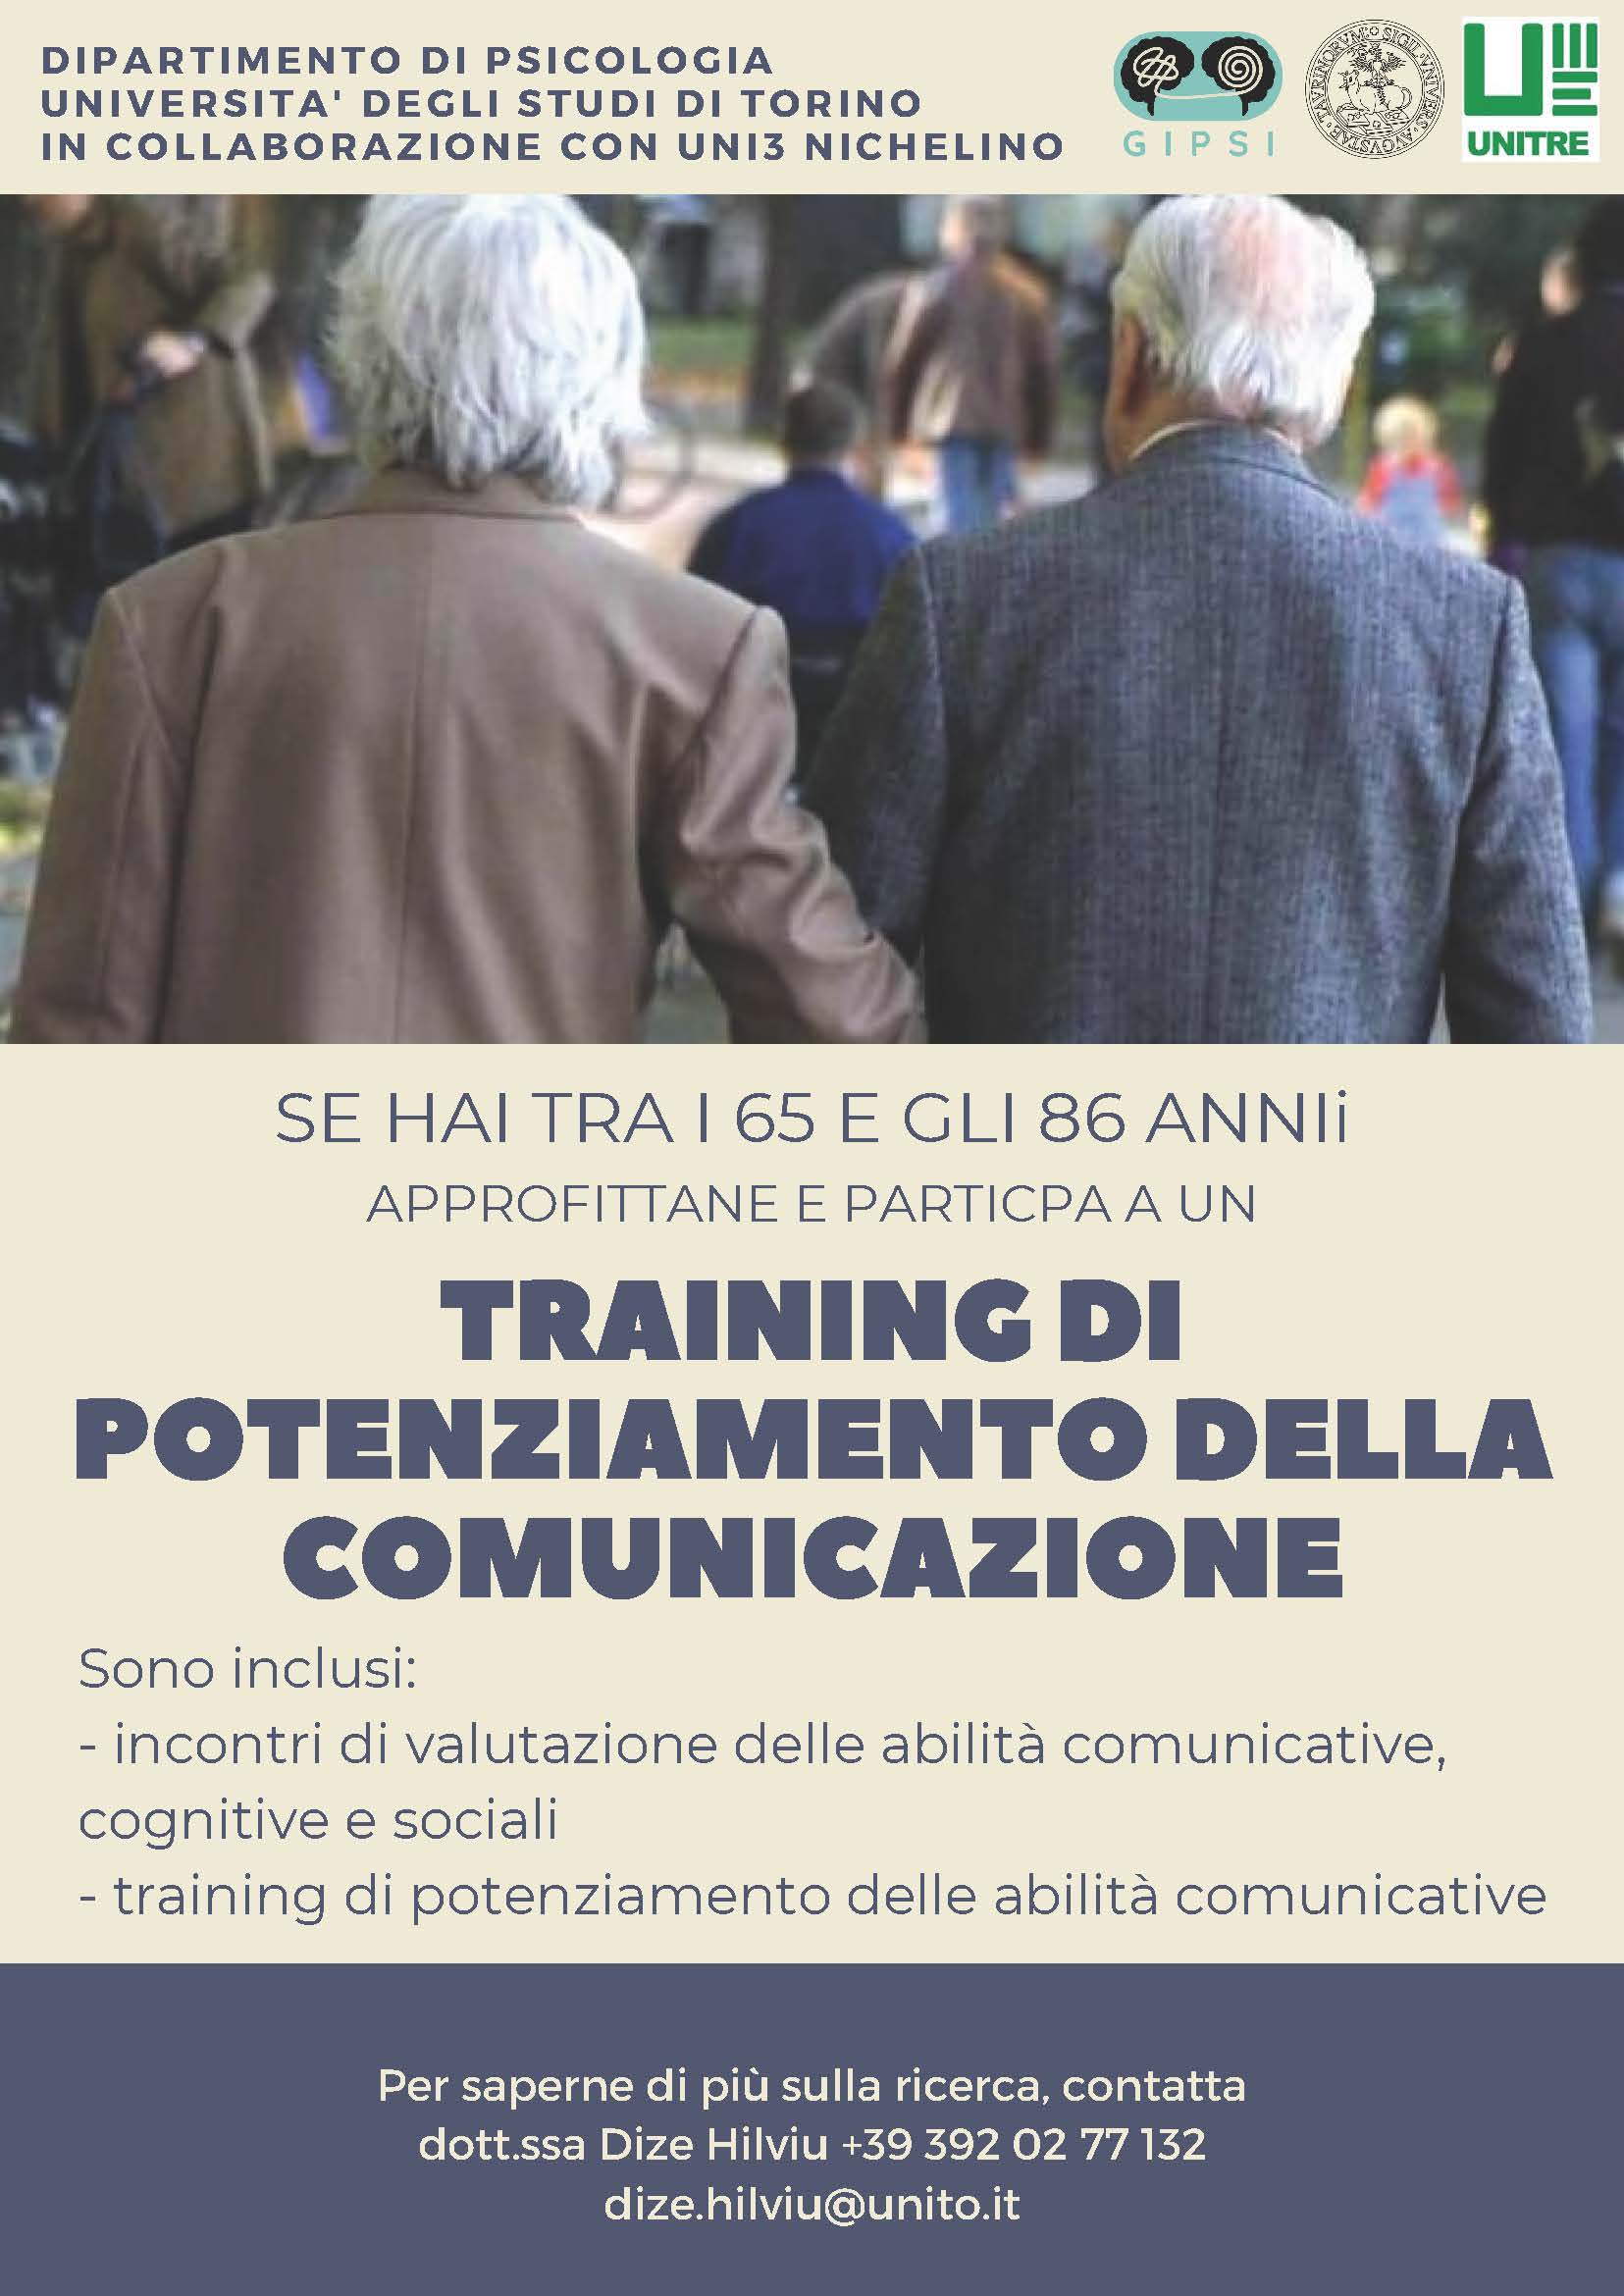 Un training per migliorare le capacità di comunicazione